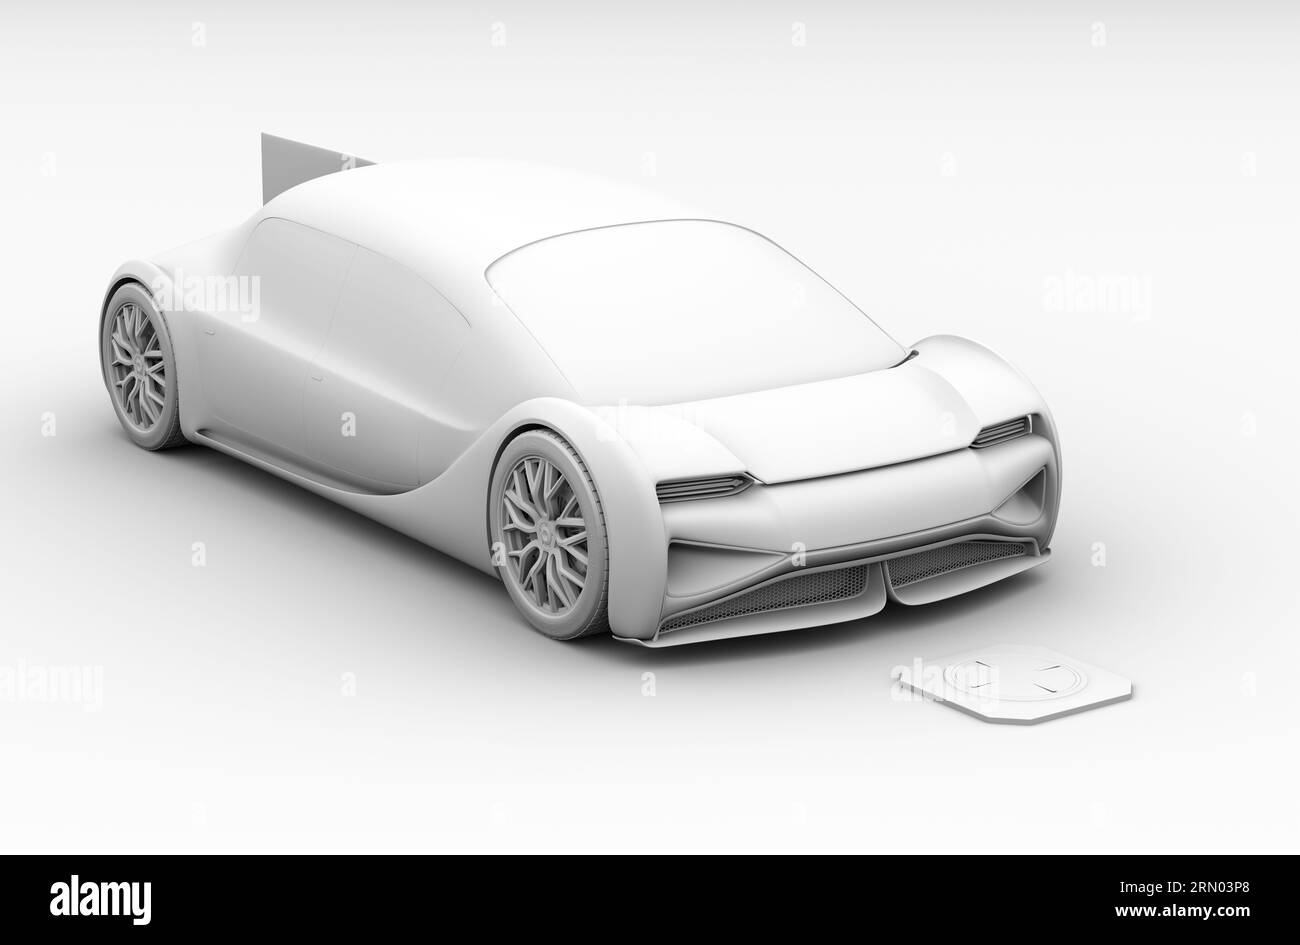 Vista isométrica del coche eléctrico futurista que conduce en el estacionamiento de carga inalámbrica. Estilo de renderizado de arcilla. Imagen de renderizado 3D. Foto de stock